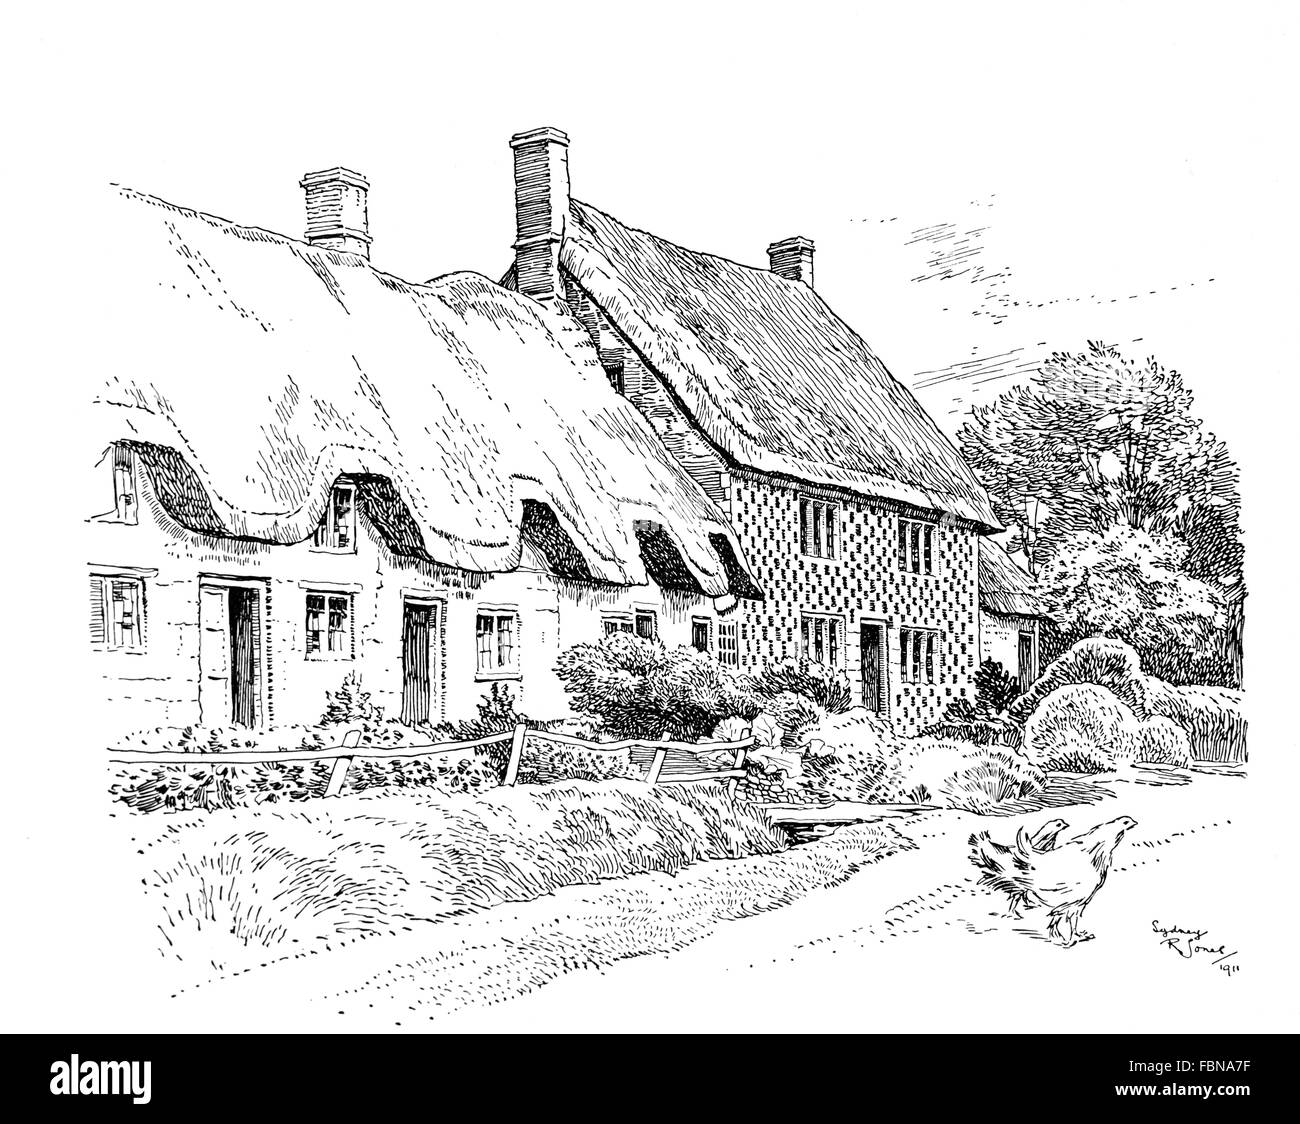 Regno Unito, Inghilterra, Wiltshire, Wylfe village, vecchio cottage con il tetto di paglia e casa colonica, linea 1911 Illustrazione di Sydney R Jones Foto Stock